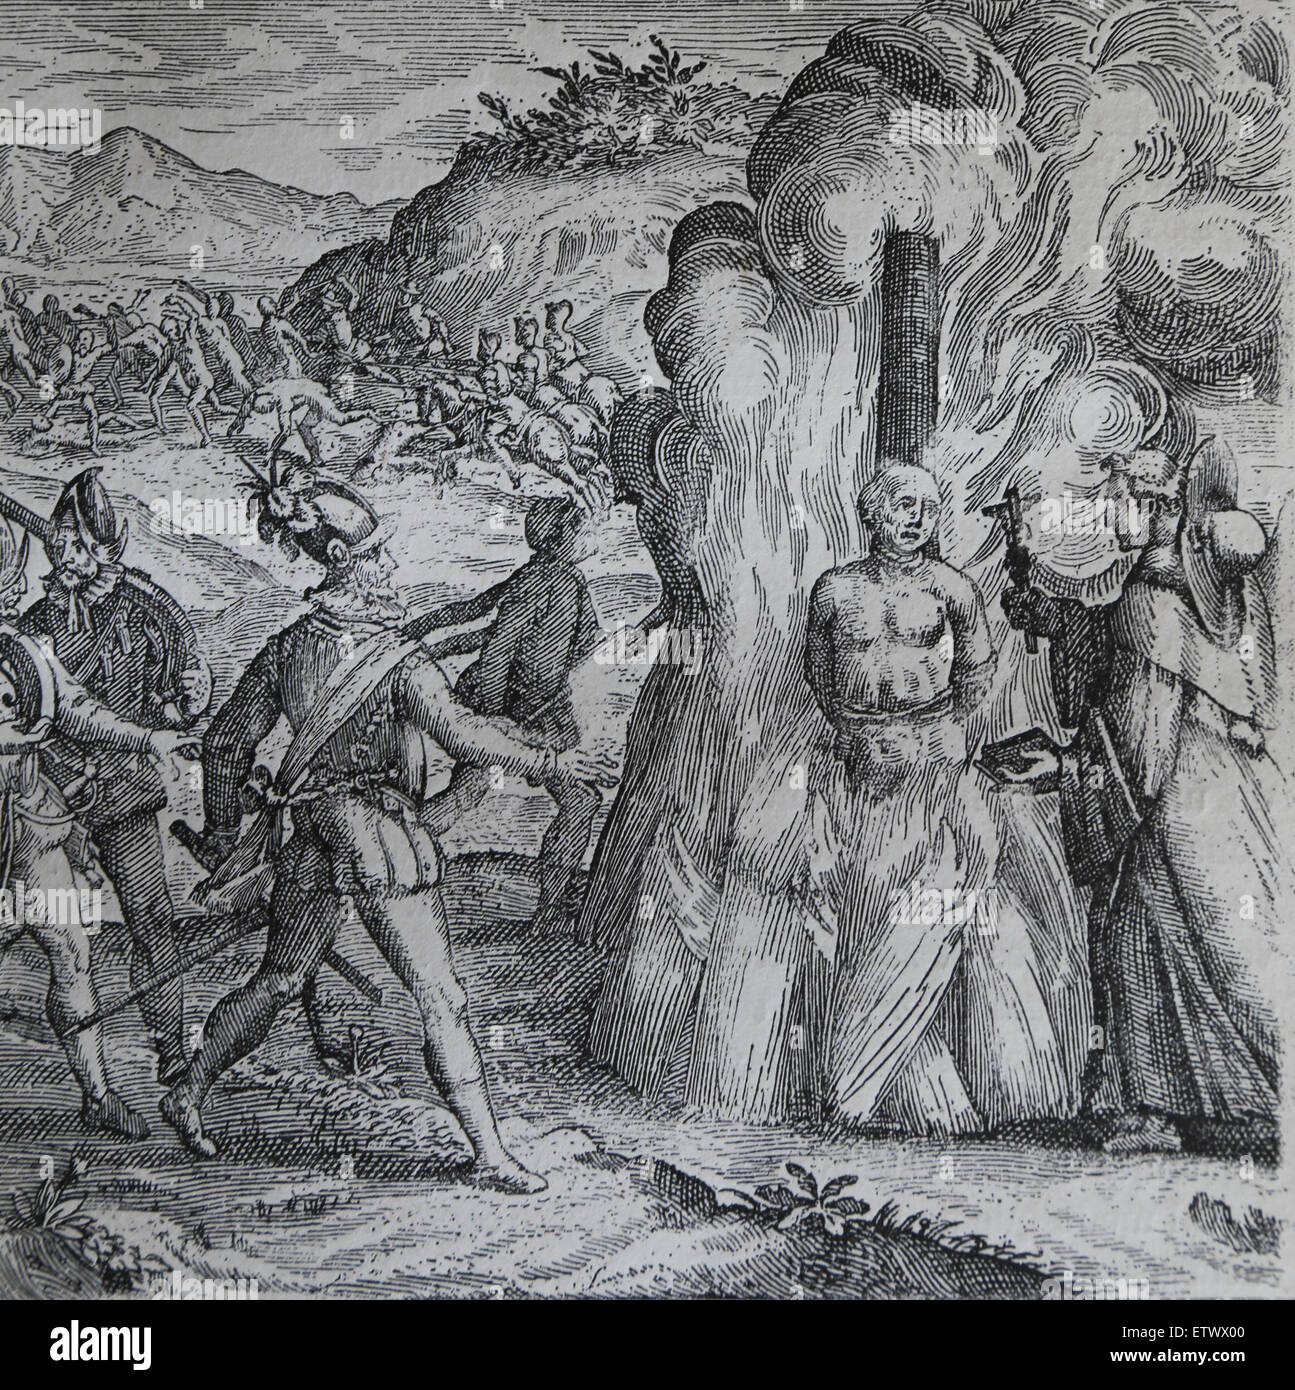 Bartolomé de las casas, la destrucción de las Indias. Jefe Taino Hatuey siendo quemados por soldados españoles. Foto de stock